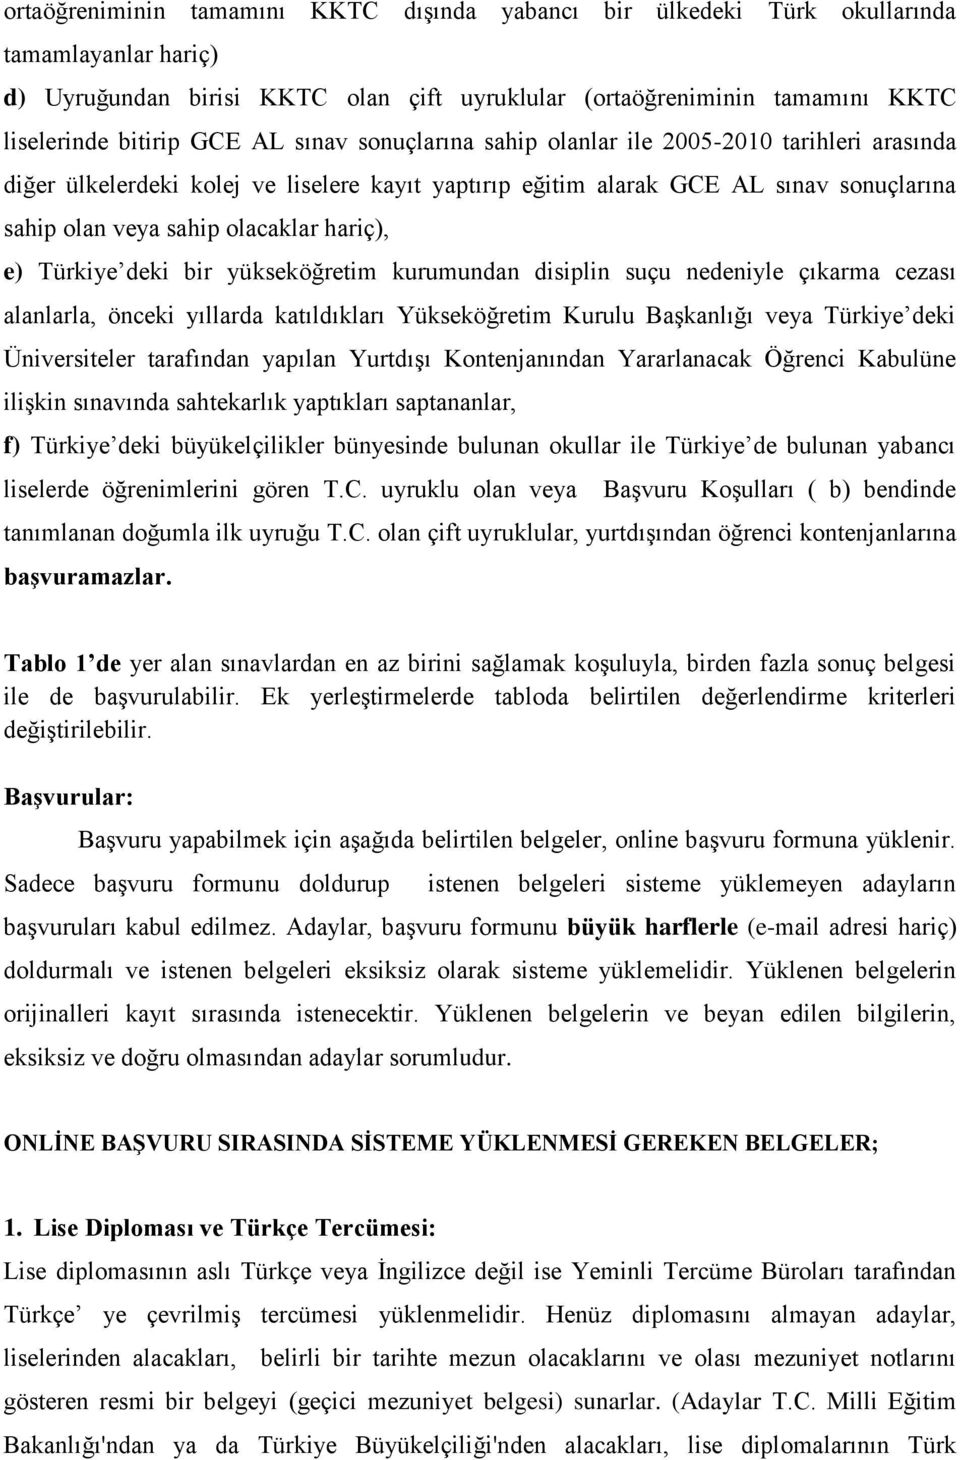 e) Türkiye deki bir yükseköğretim kurumundan disiplin suçu nedeniyle çıkarma cezası alanlarla, önceki yıllarda katıldıkları Yükseköğretim Kurulu Başkanlığı veya Türkiye deki Üniversiteler tarafından